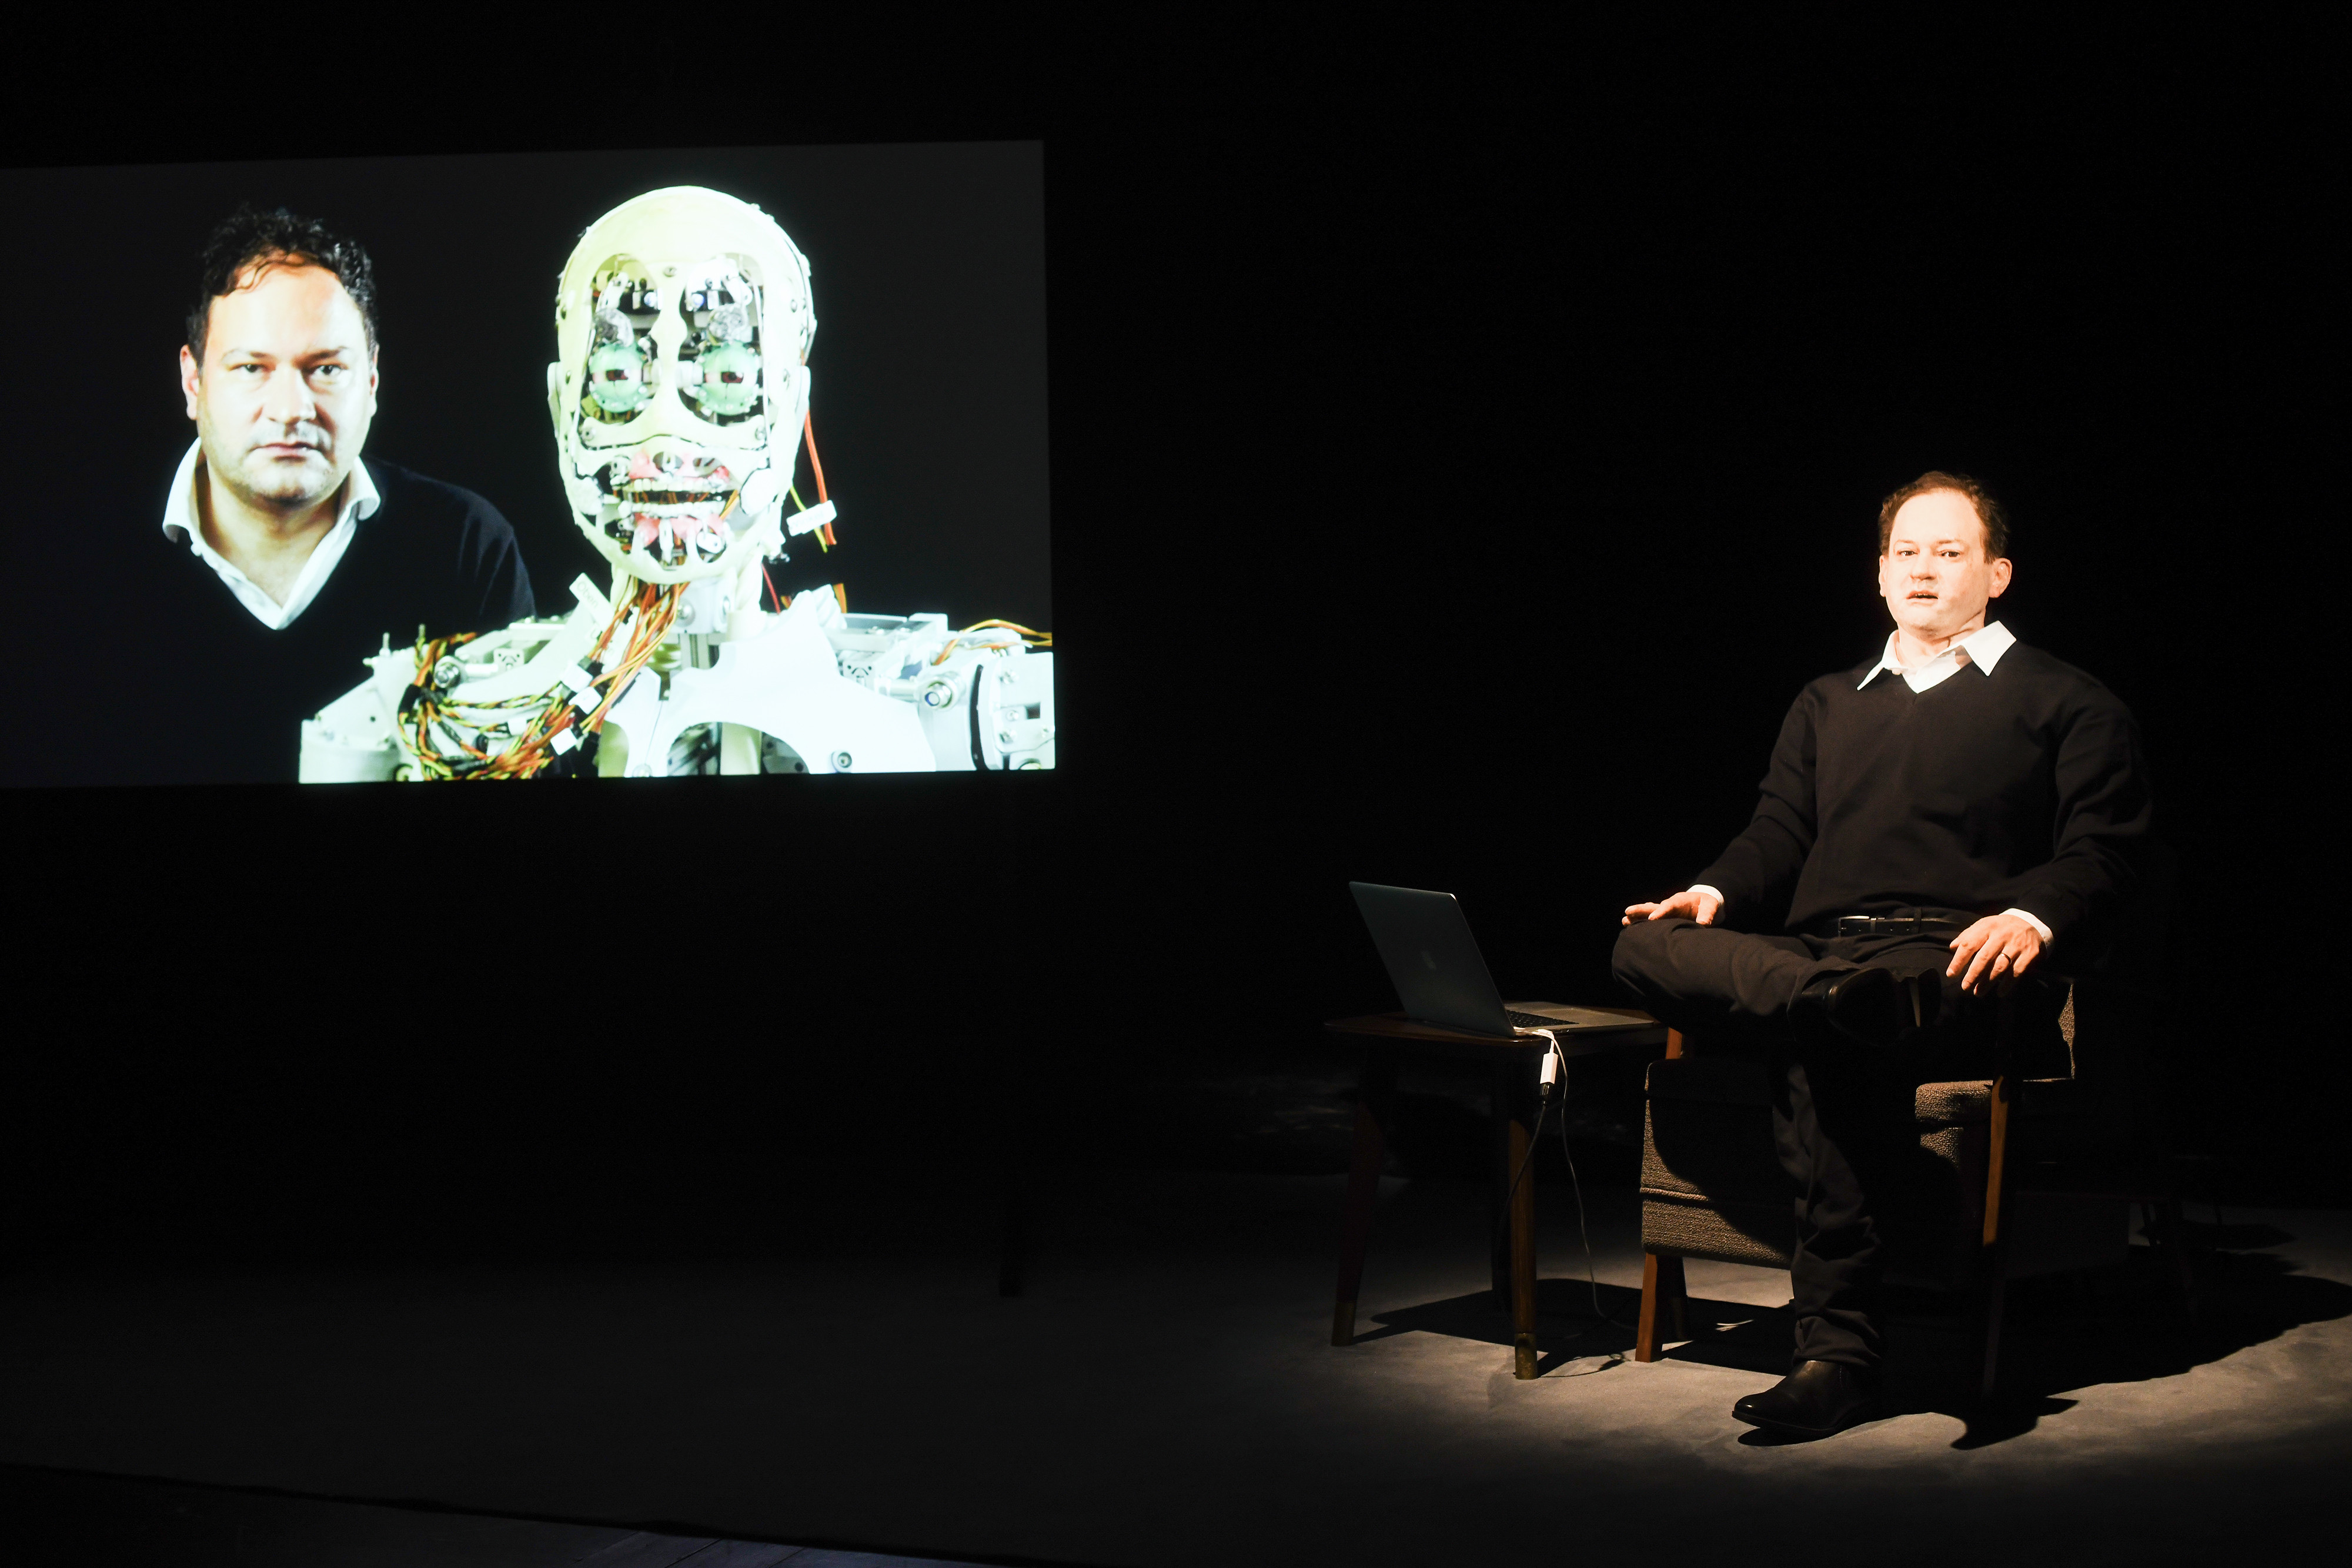 Links im Bild ist ein Bildschirm, auf welchem ein Portrait eines Mannes und der Technik des Roboterkopfes zu sehen ist. Links sitzt der Roboter mit dem Gesicht dieses Mannes.